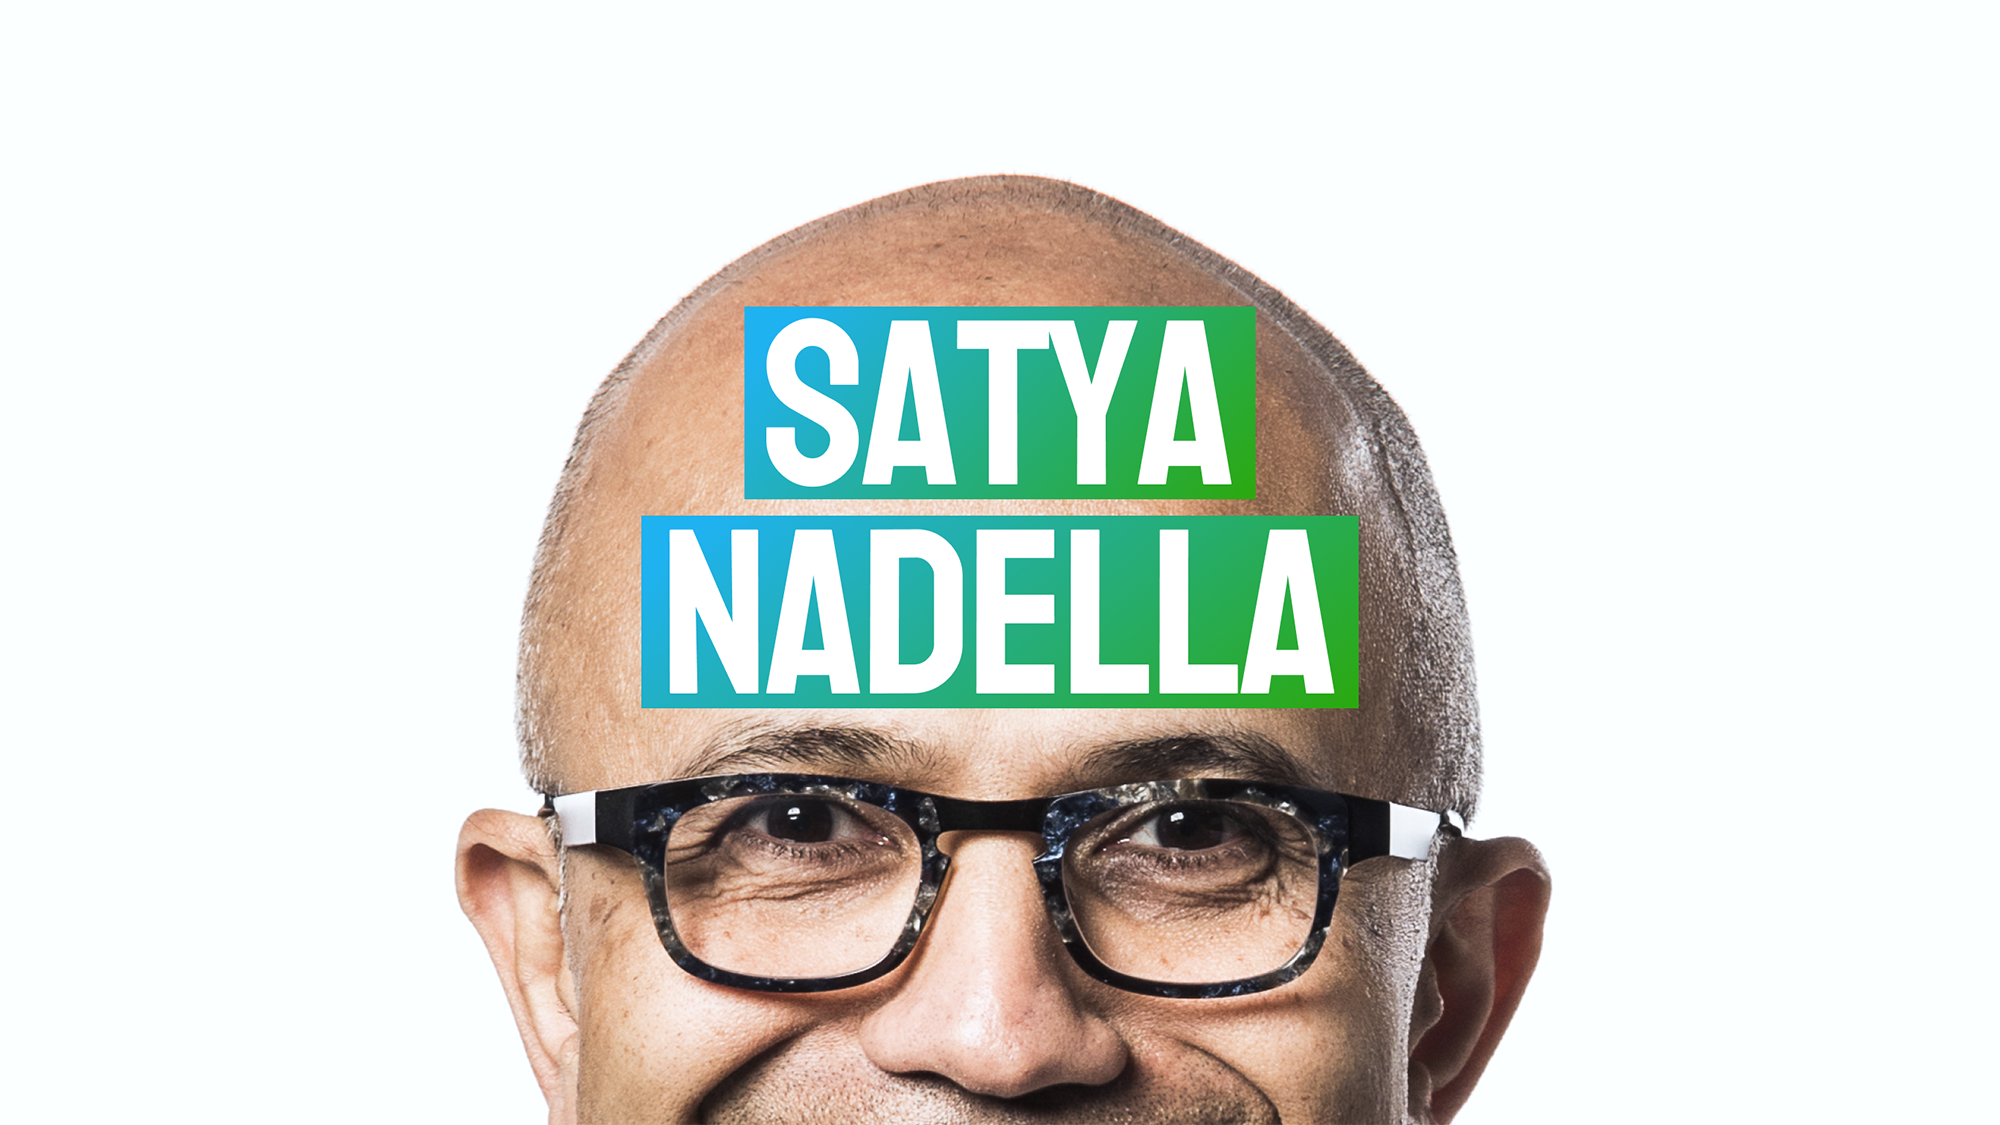 Satya Nadella: CEO of Microsoft